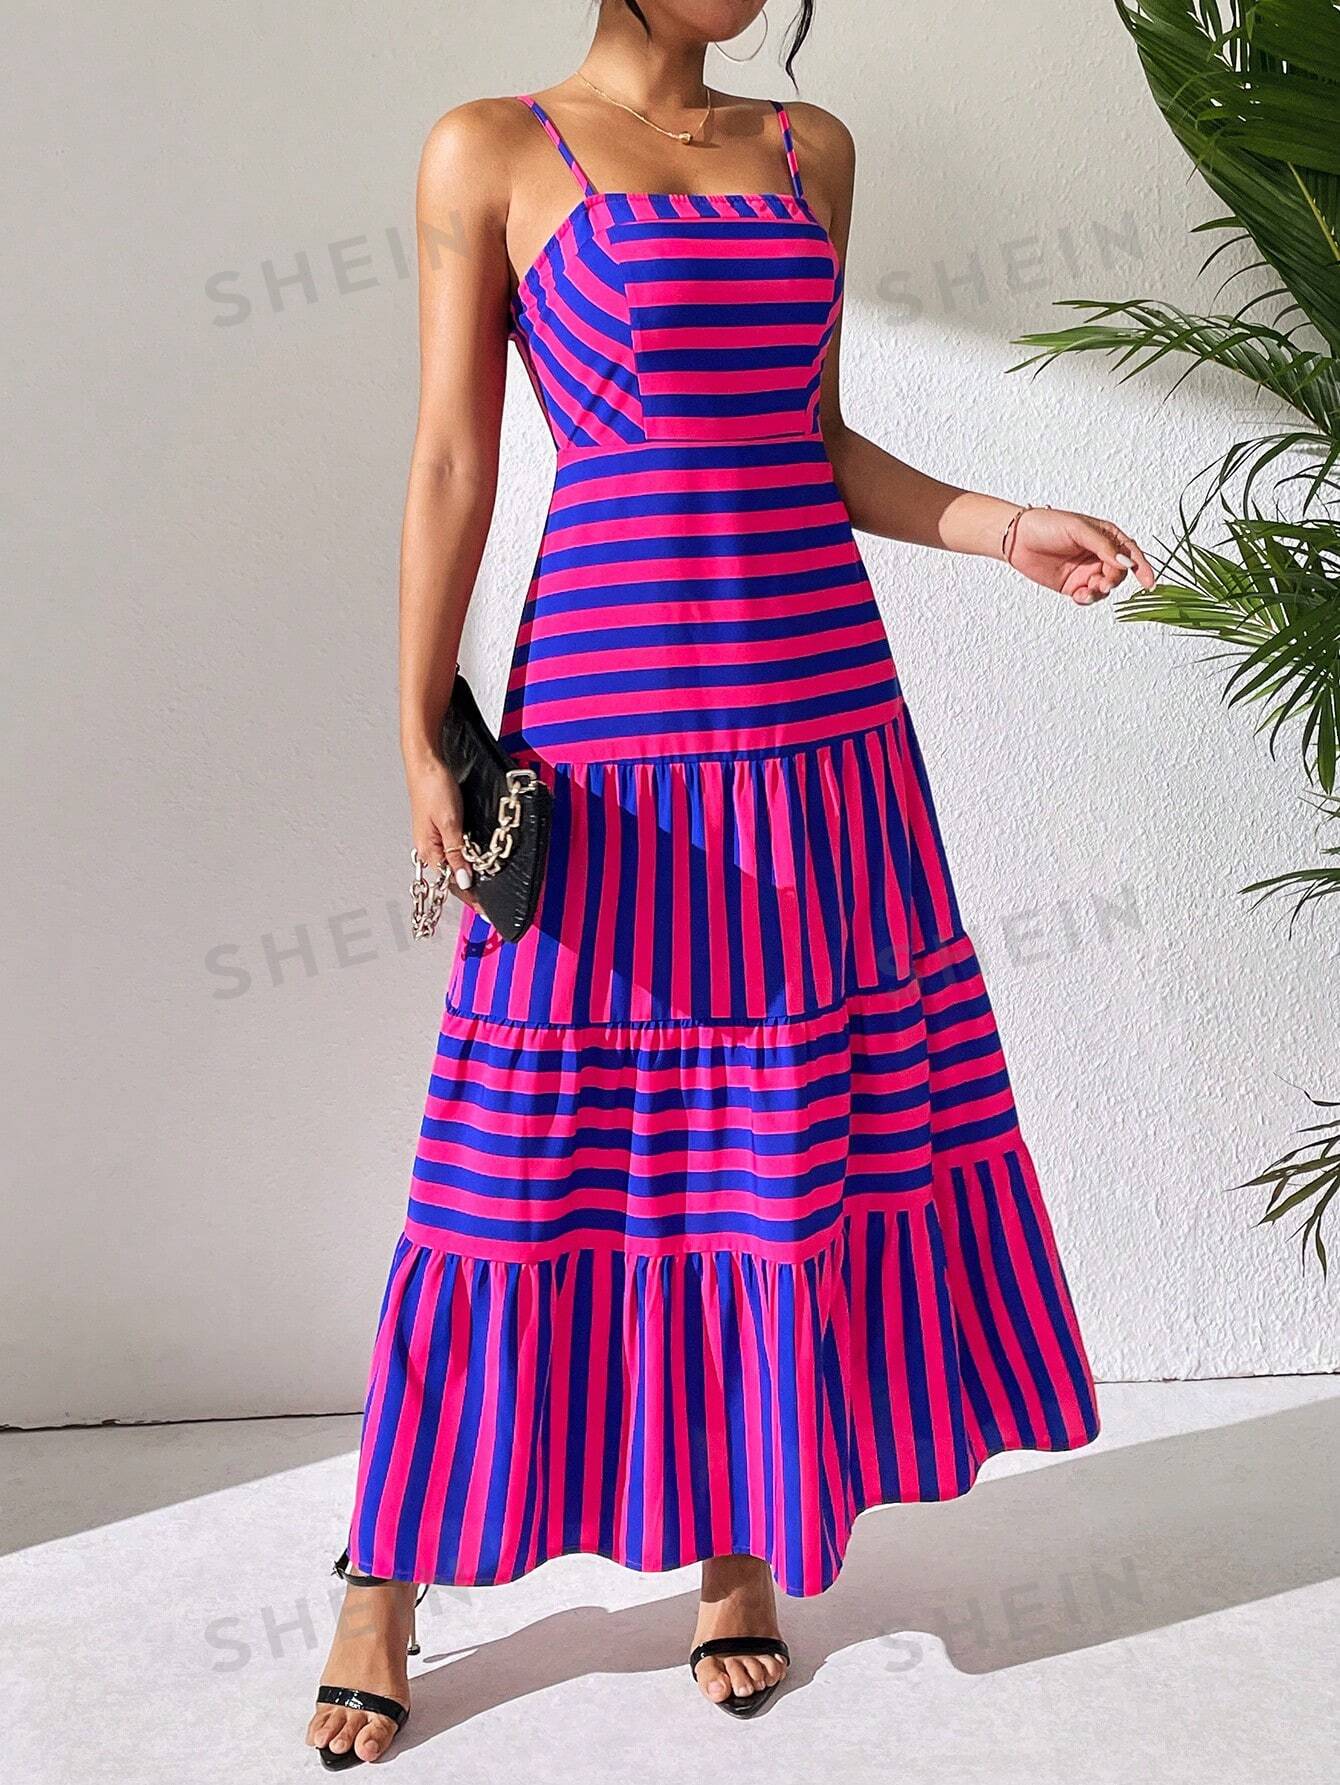 SHEIN Платье на бретельках Frenchy в смелую полоску с цветными блоками, ярко-розовый shein clasi женское платье макси без рукавов в полоску с цветными блоками черное и белое